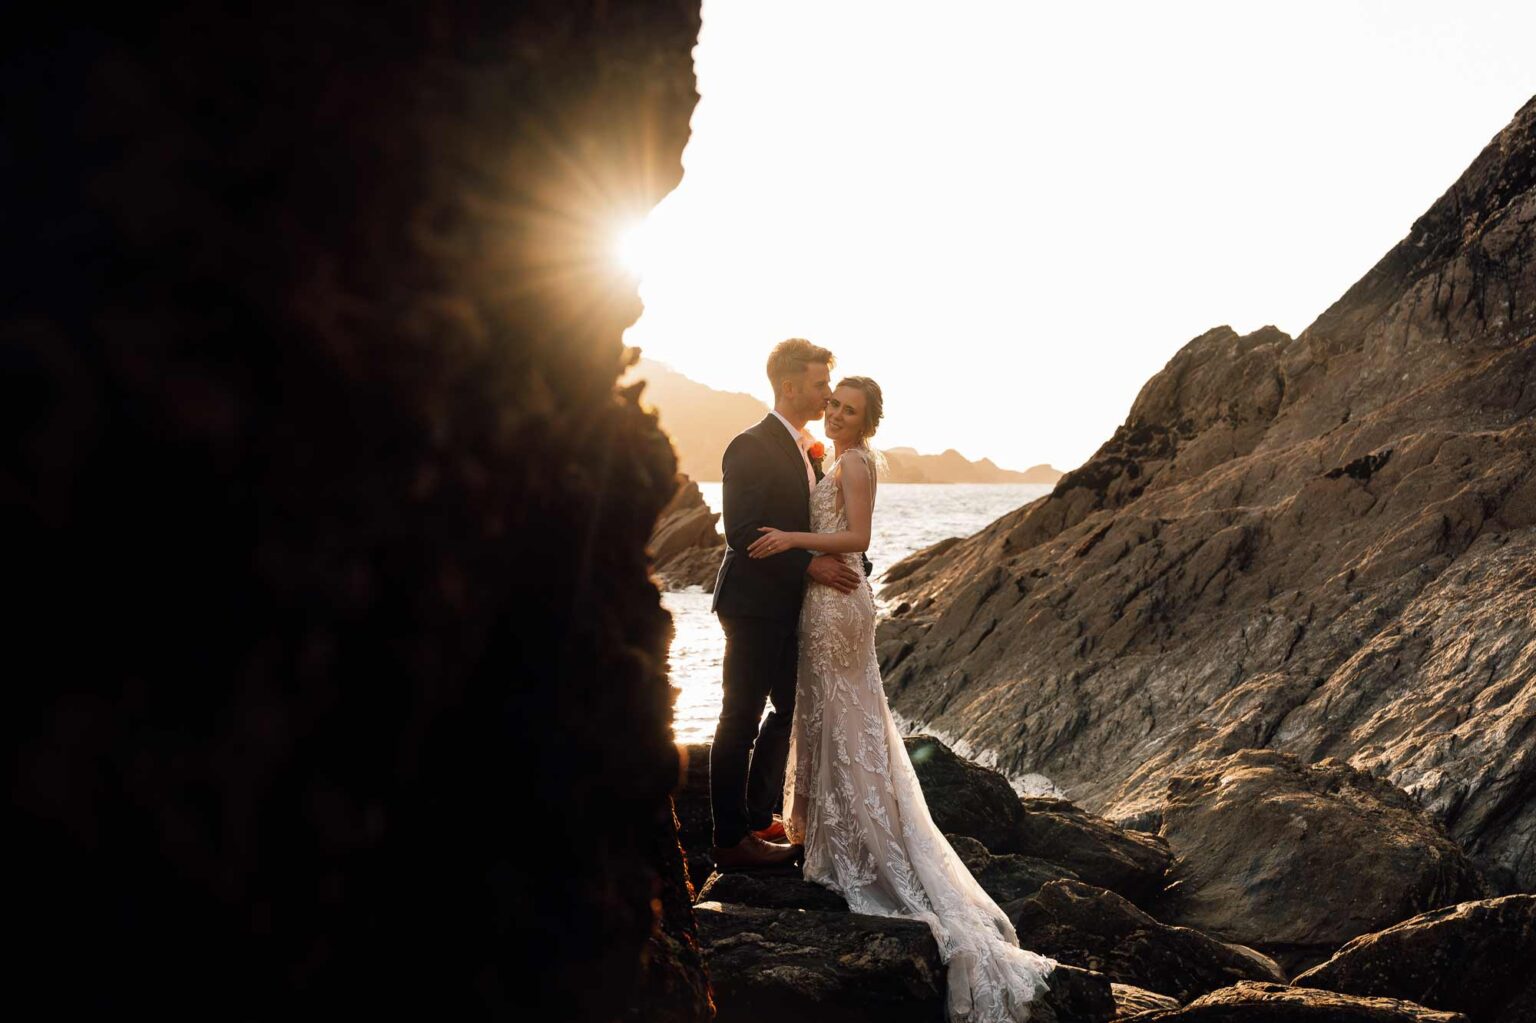 Coastal wedding photography with newlyweds stood with beautiful sunset